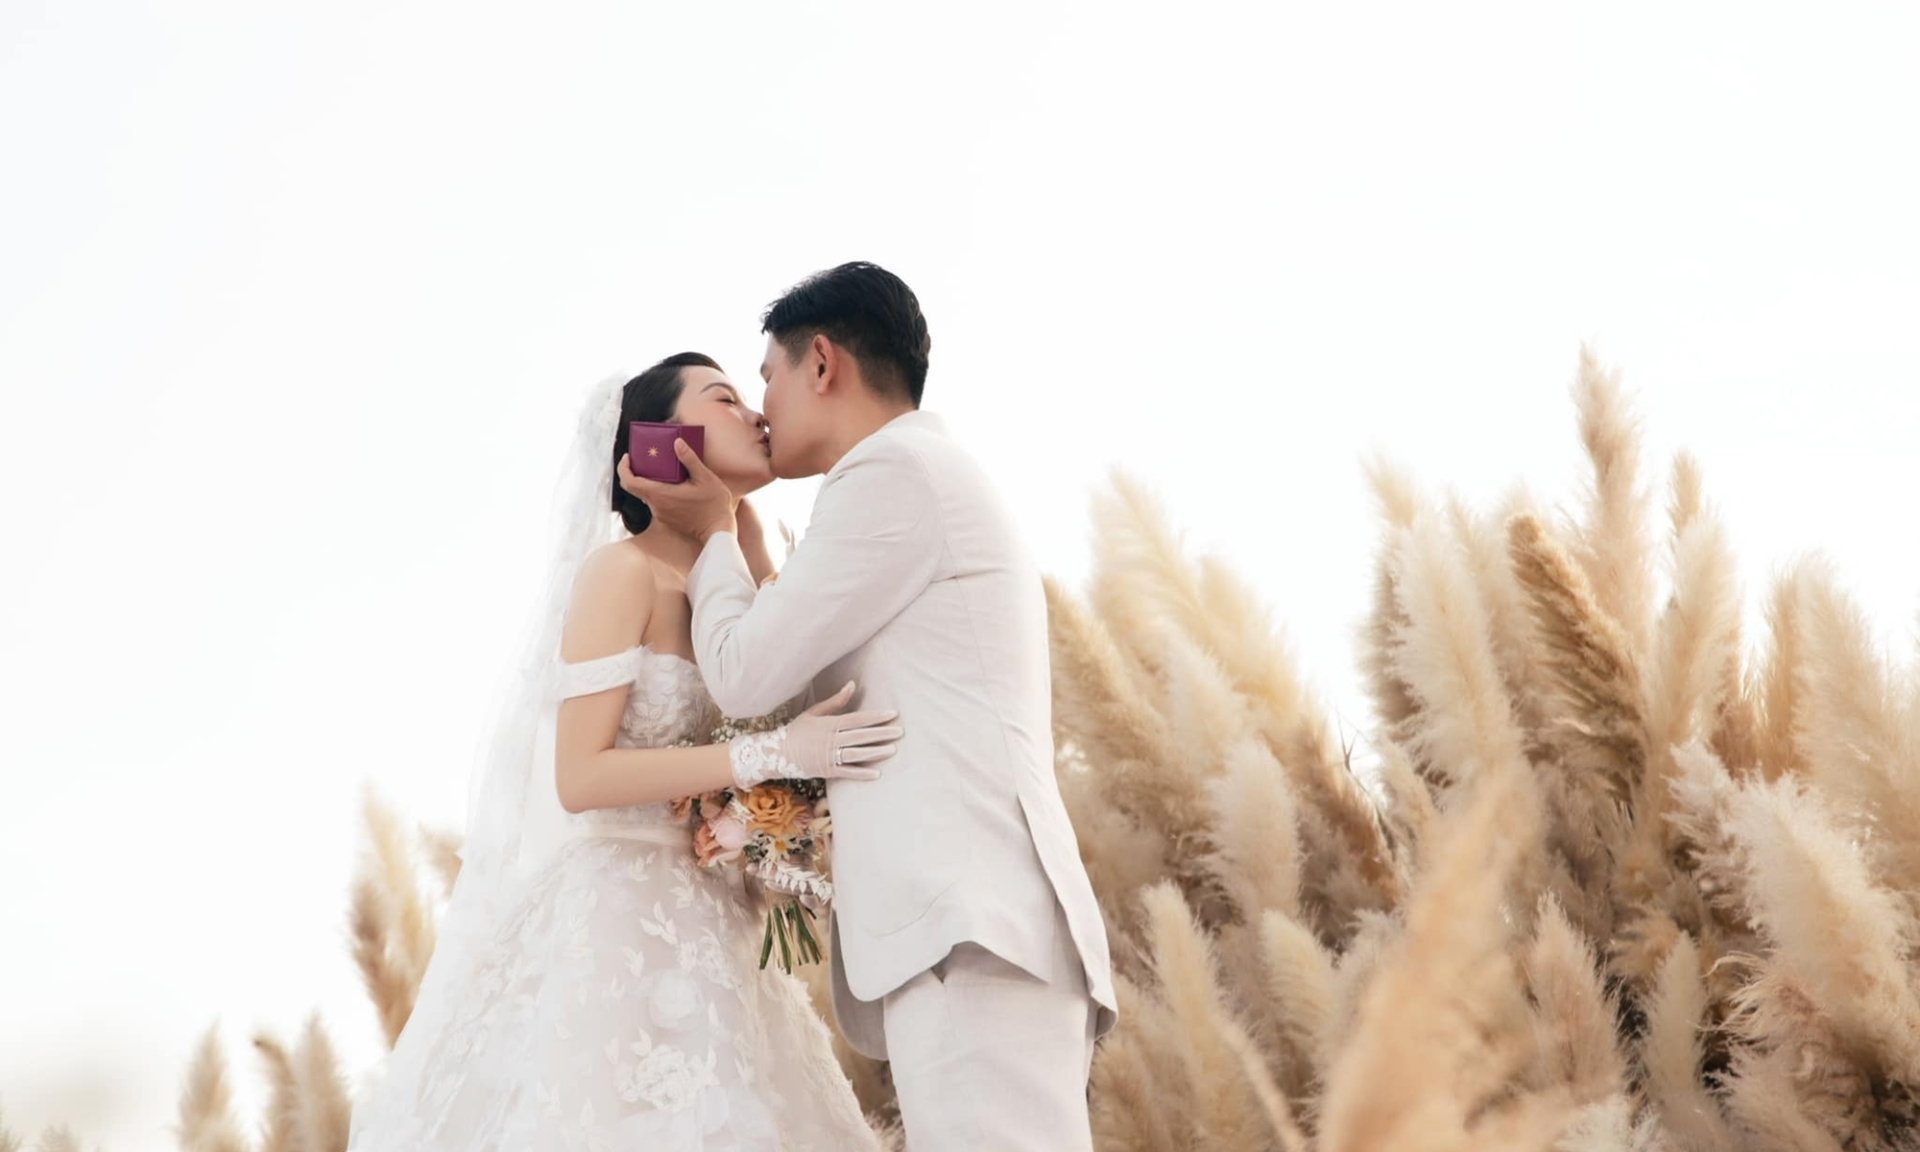 Đám cưới cổ tích của Minh Hằng diễn ra cách đây 9 tháng. Cuối cùng cả 2 cũng sắp đón con đầu lòng trong hạnh phúc.